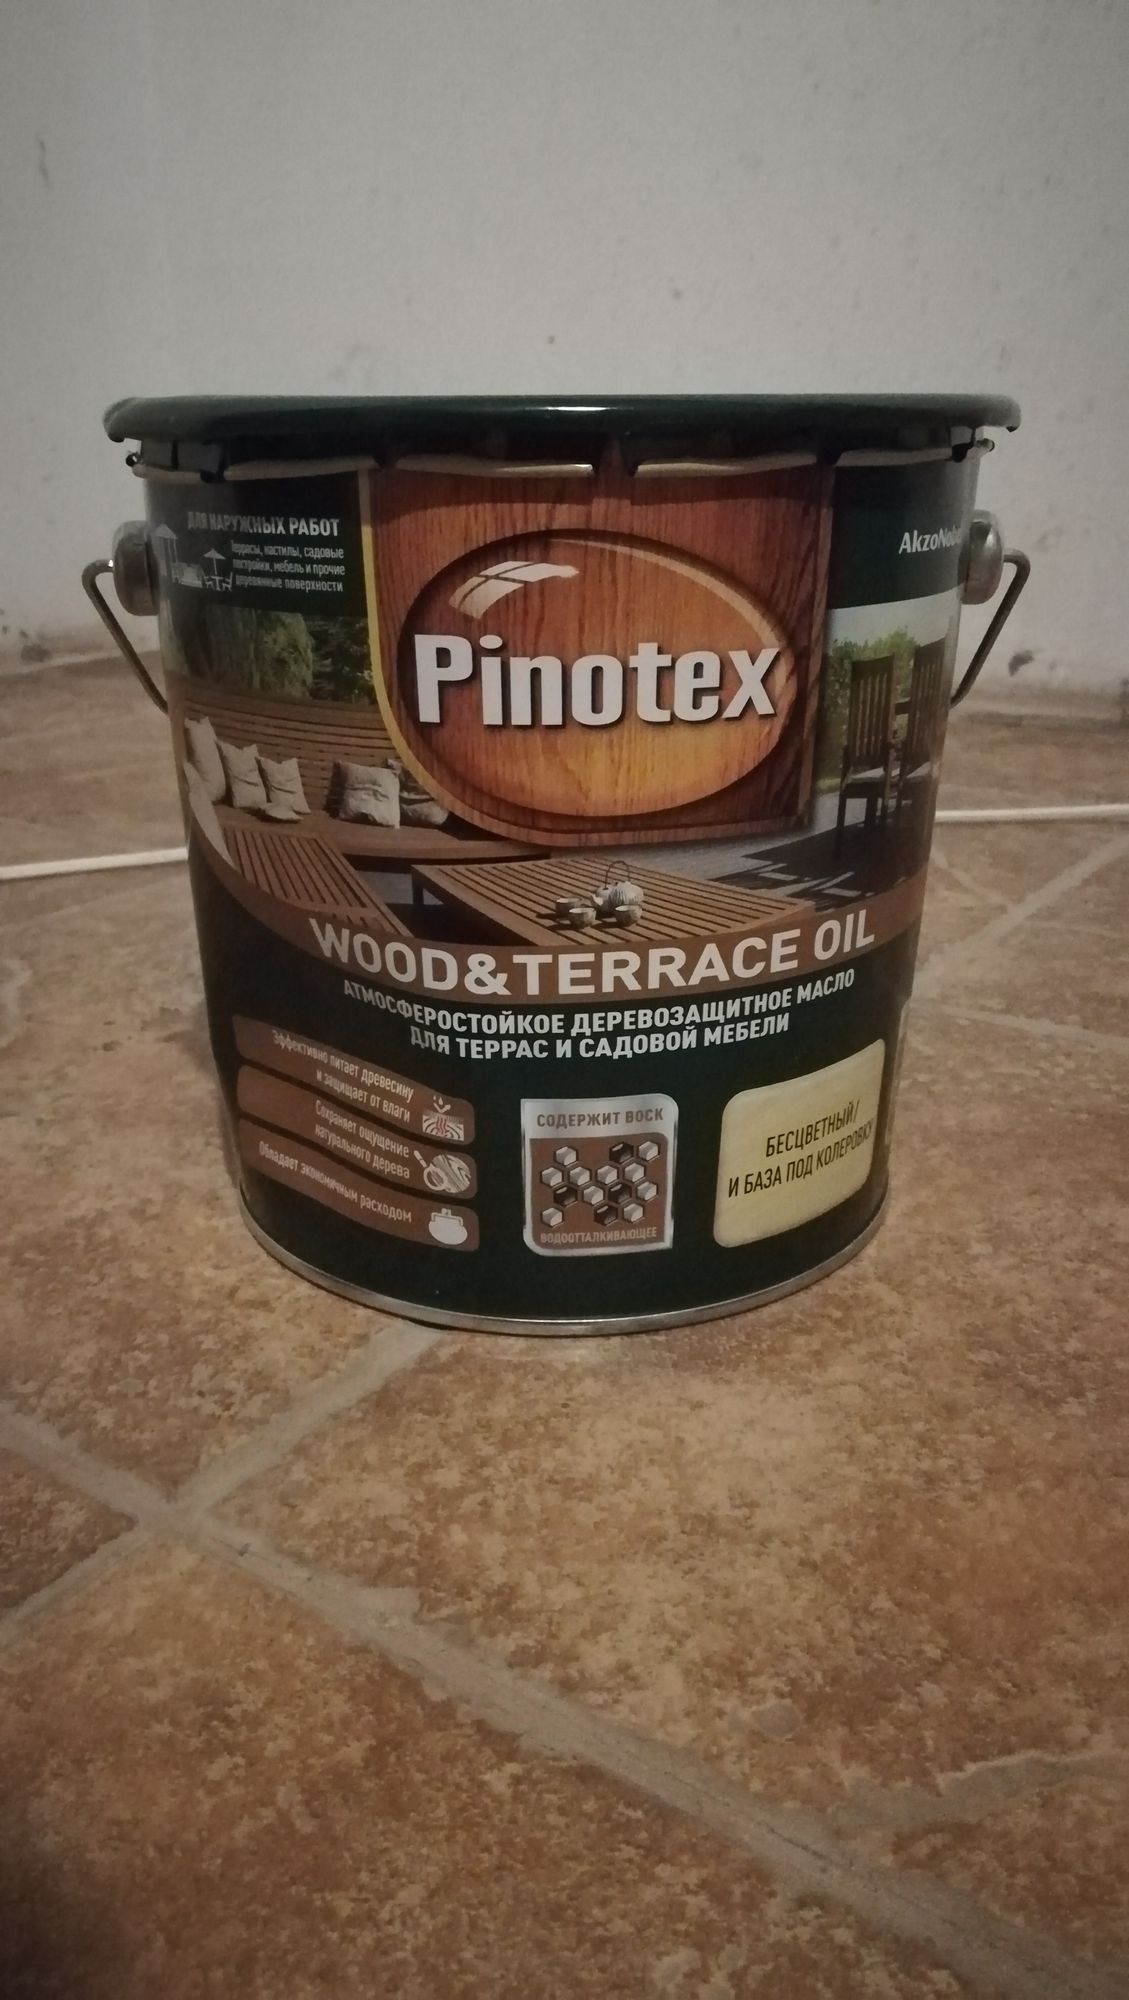 Pinotex Wood & Terrace Oil 2.7 л